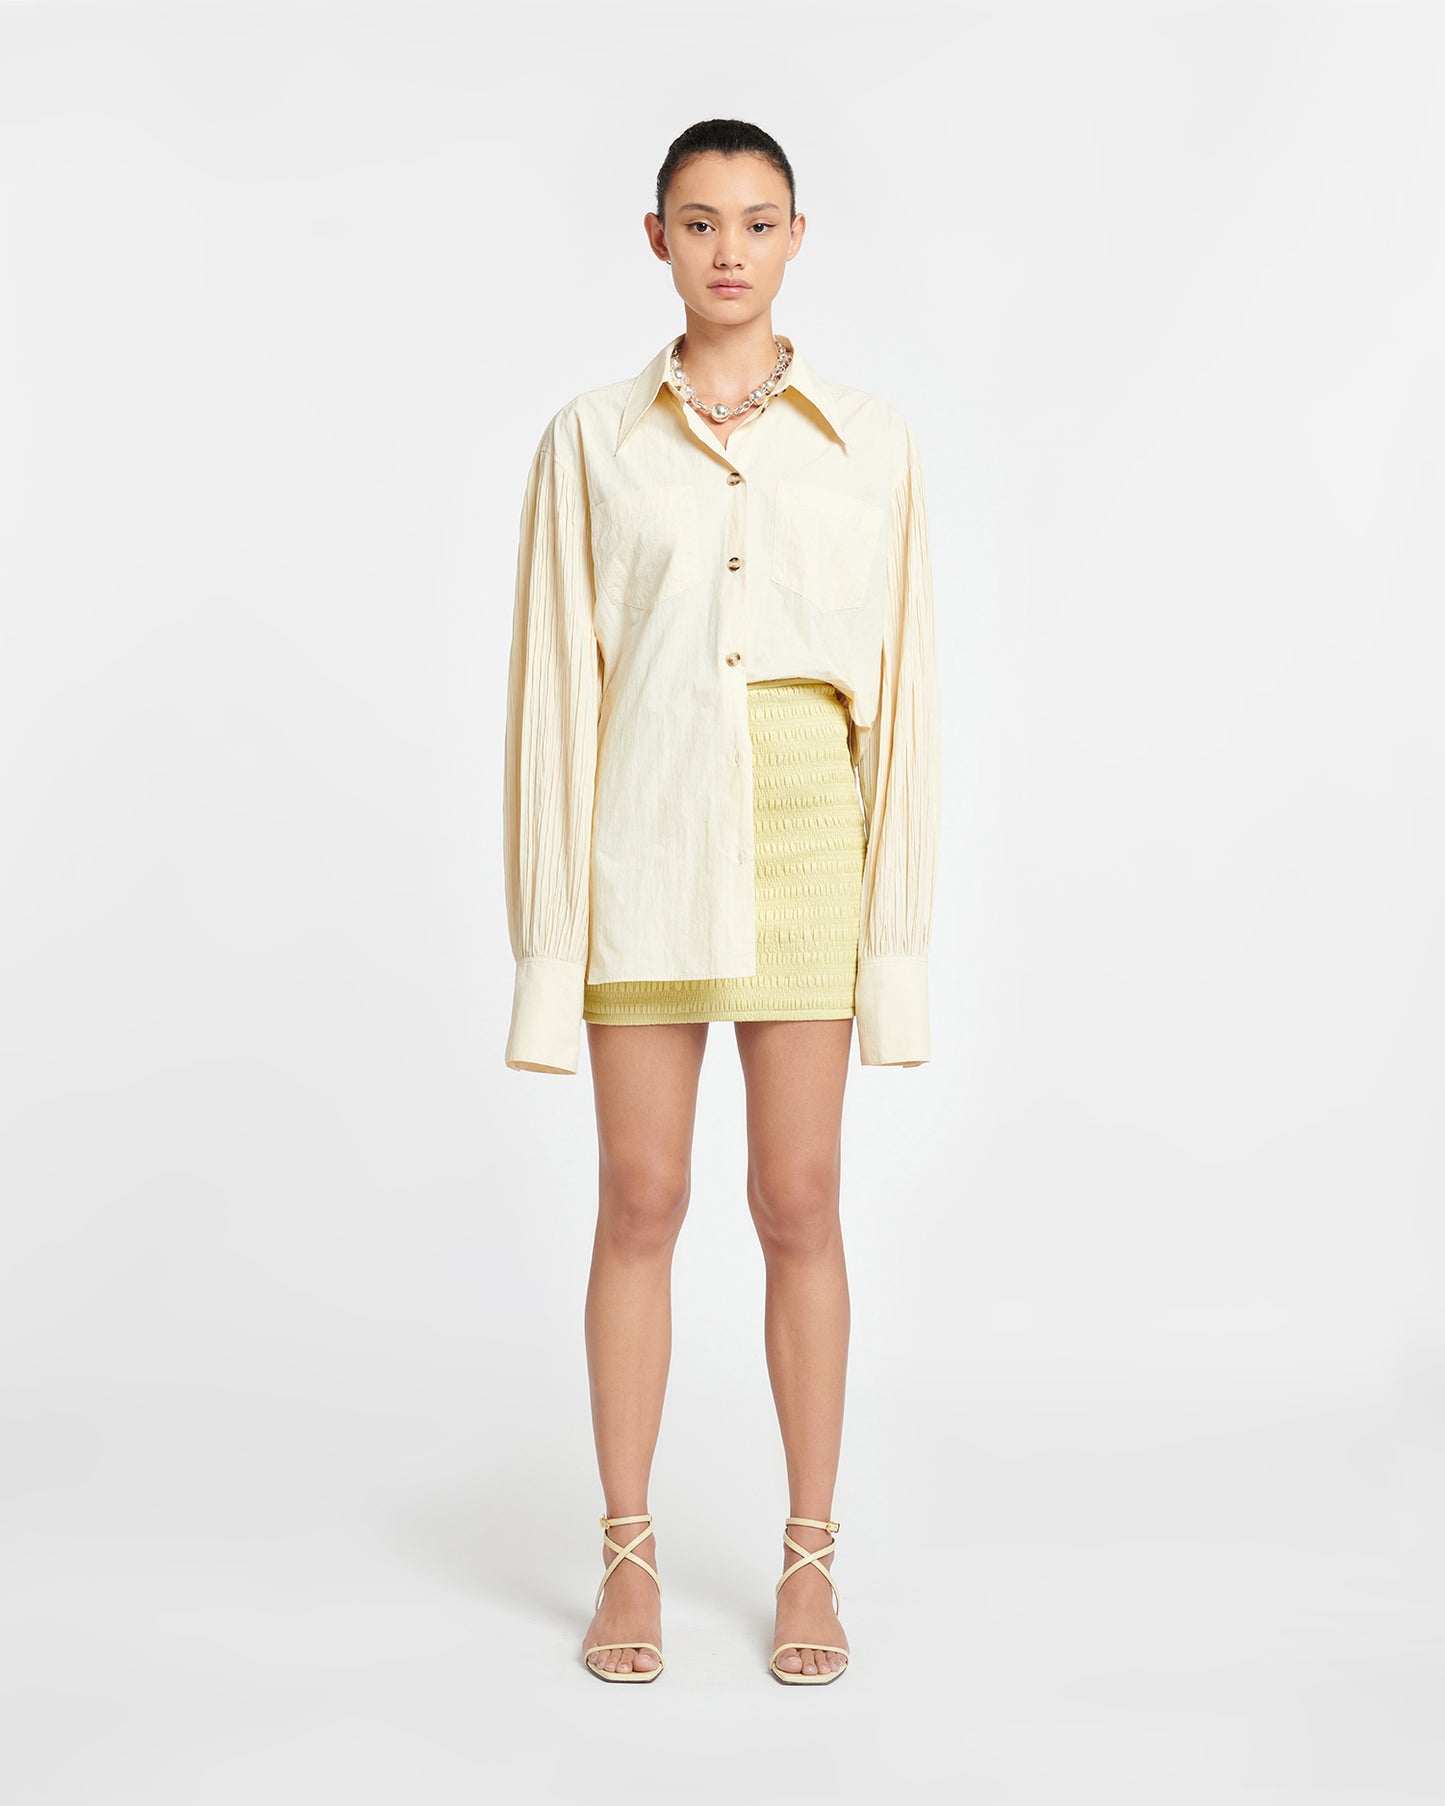 Ceara - Smocked Okobor™ Alt-Leather Mini Skirt - Lemongrass